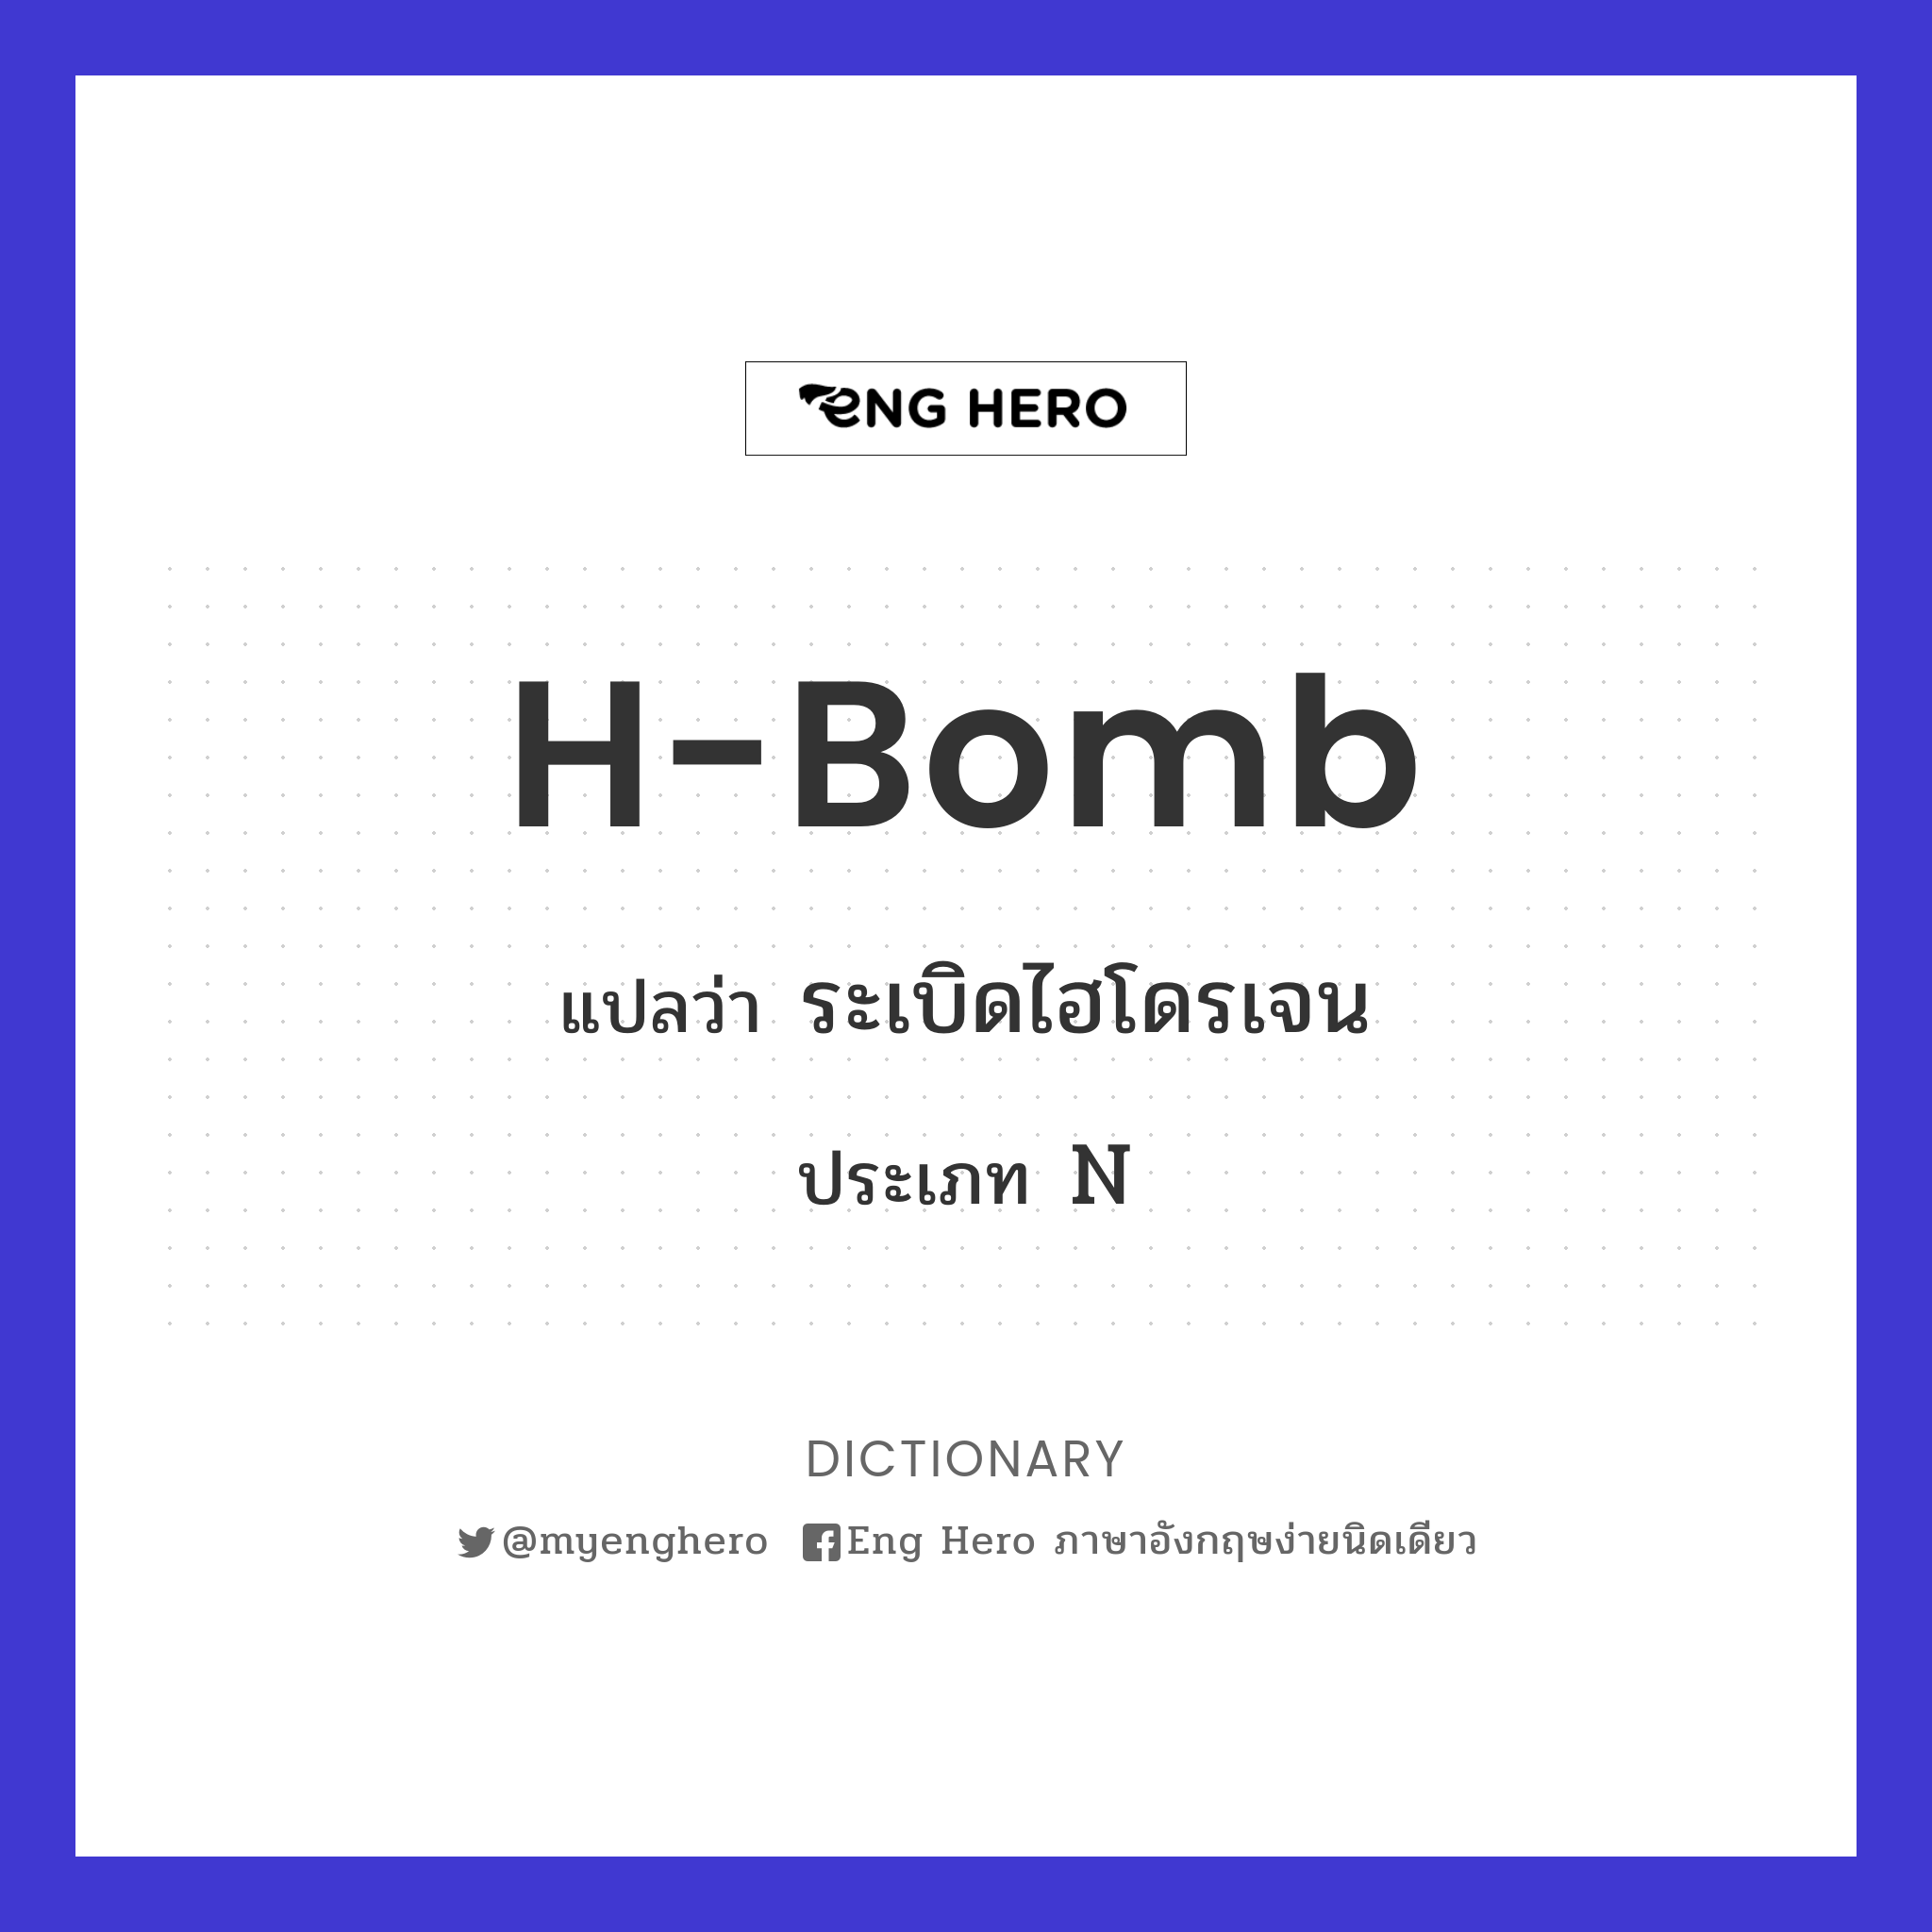 H-bomb